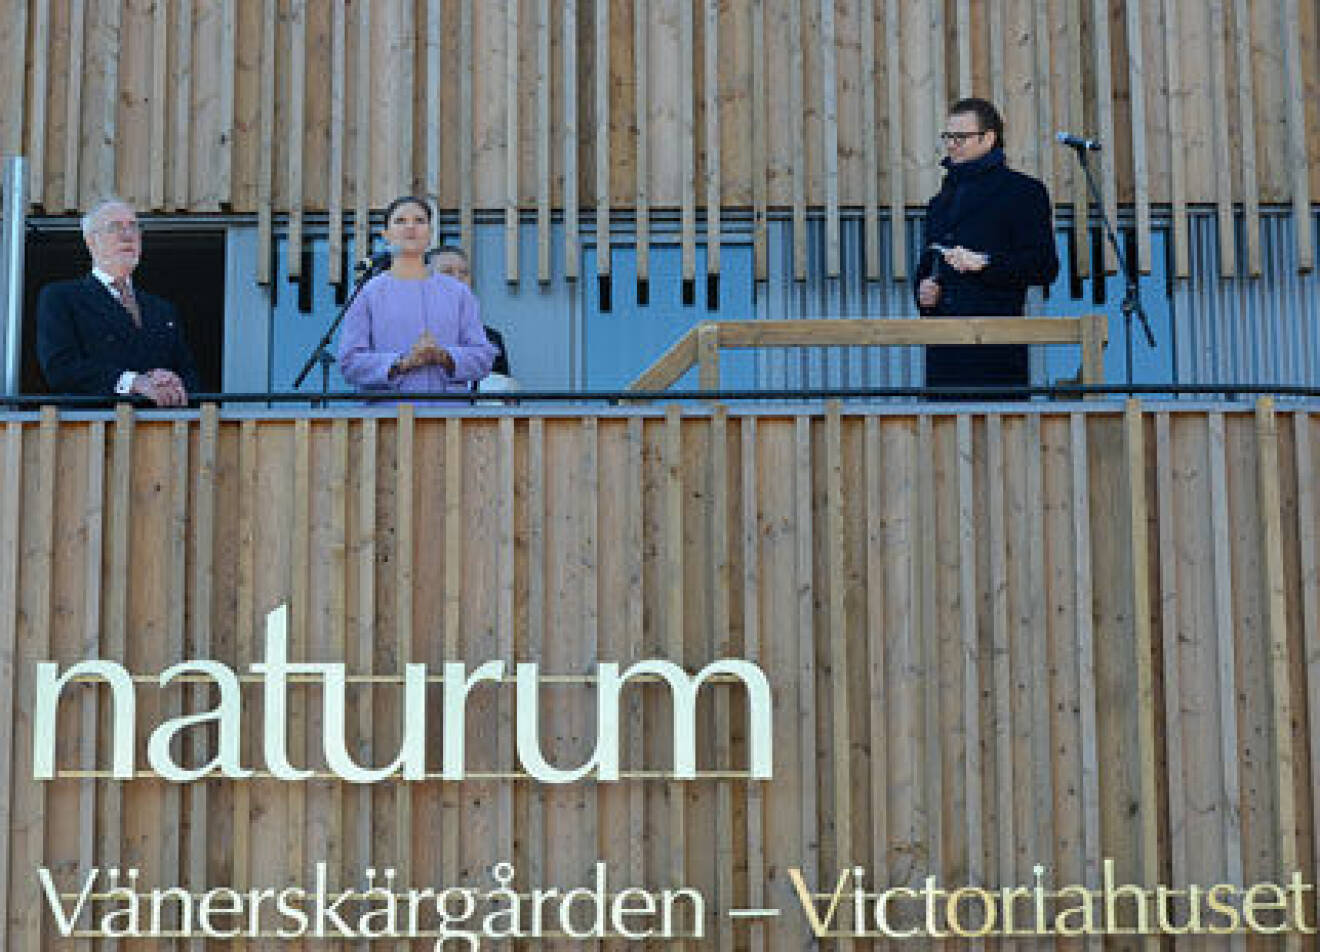 Kronprinsessan Victoria och Prins Daniel på en balkong under invigningen av Vänerskärgården